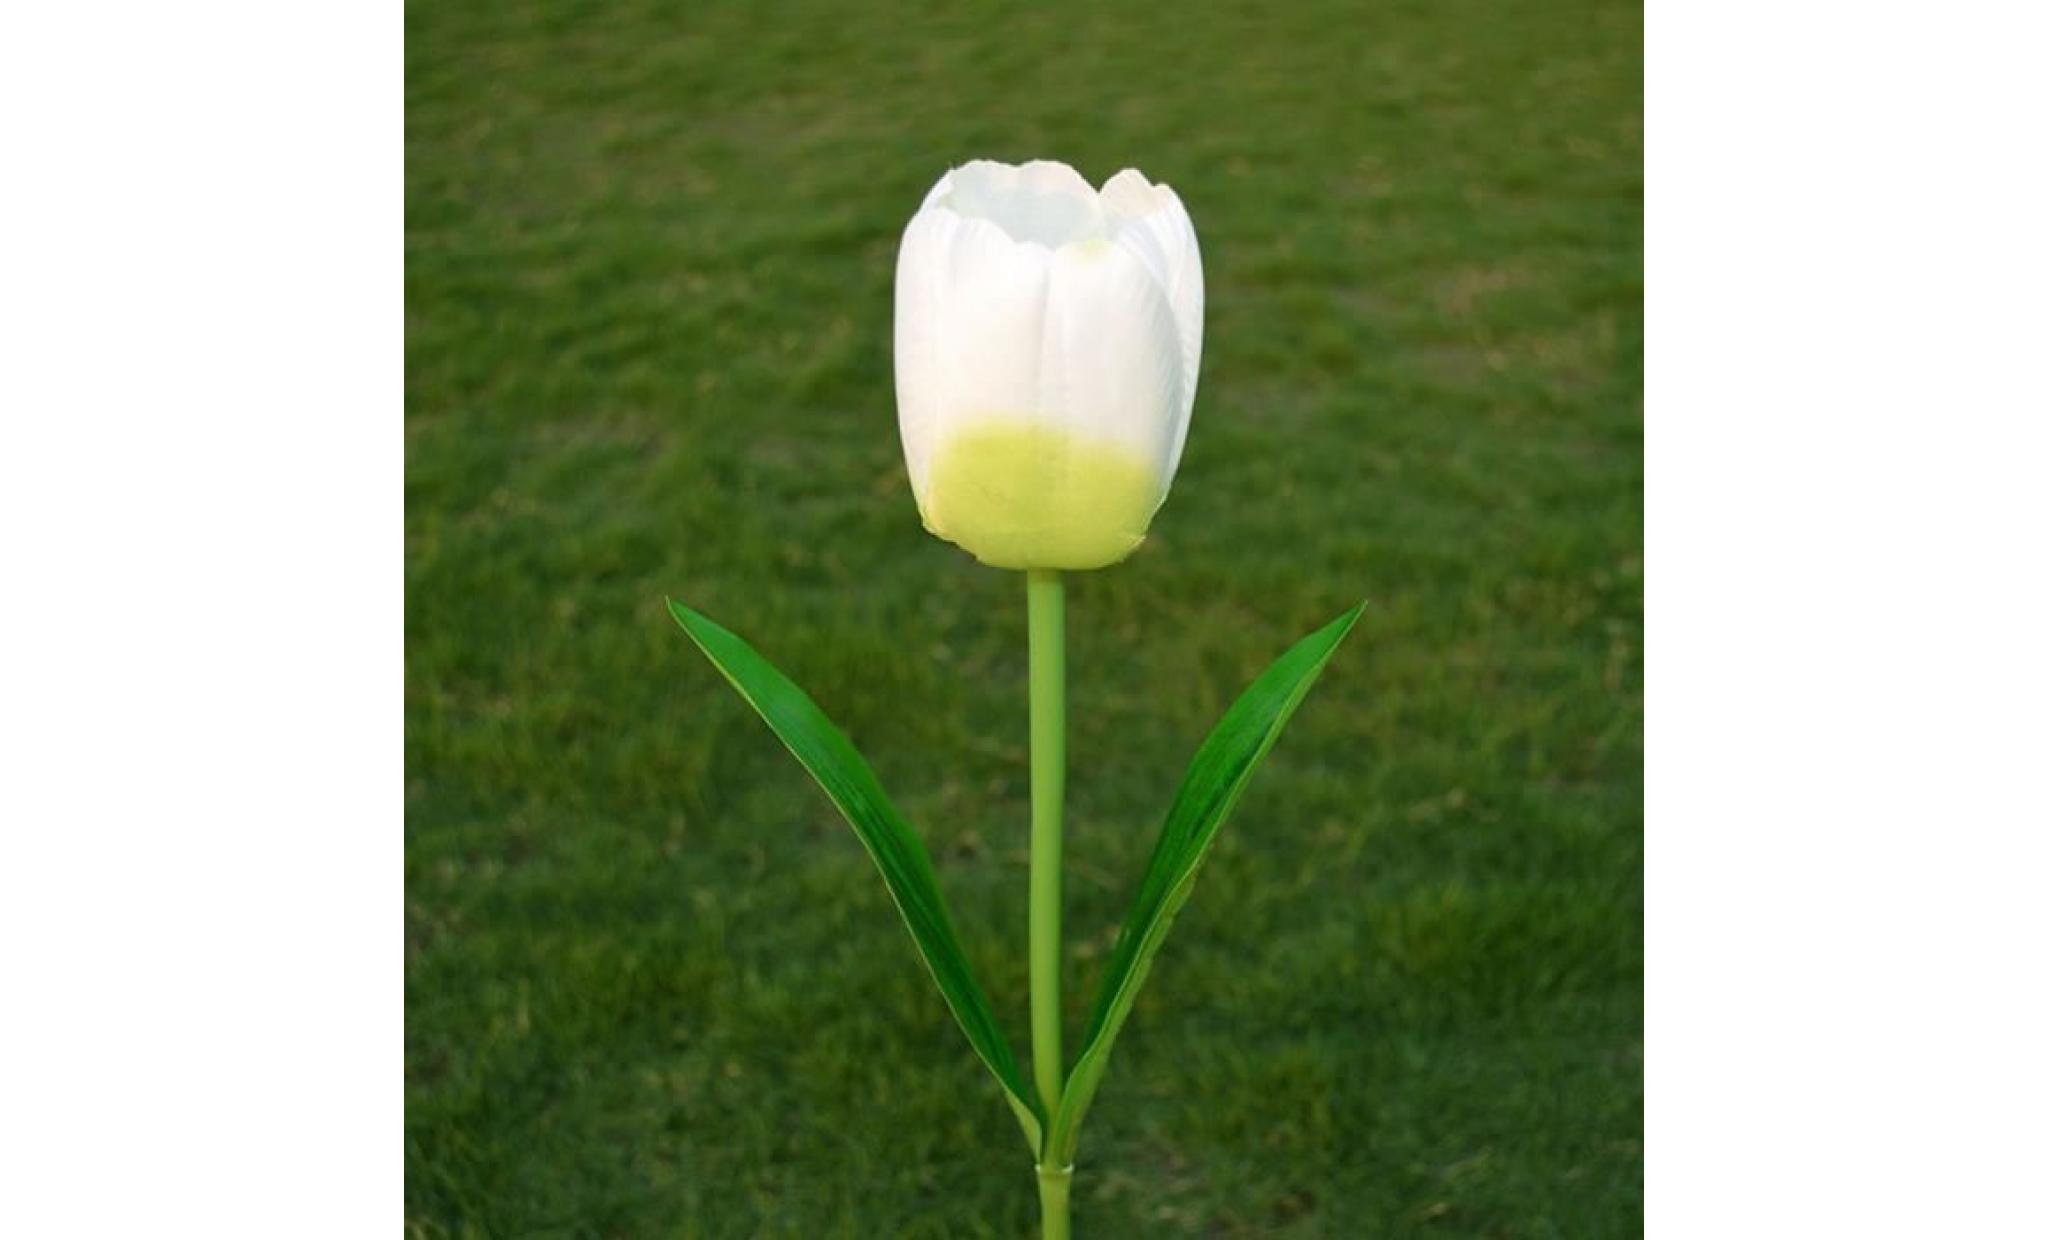 borne solaire 1 tête solaire led lampe décorative extérieure de pelouse 1 tête tulipe fleur lumière #pa 115 pas cher